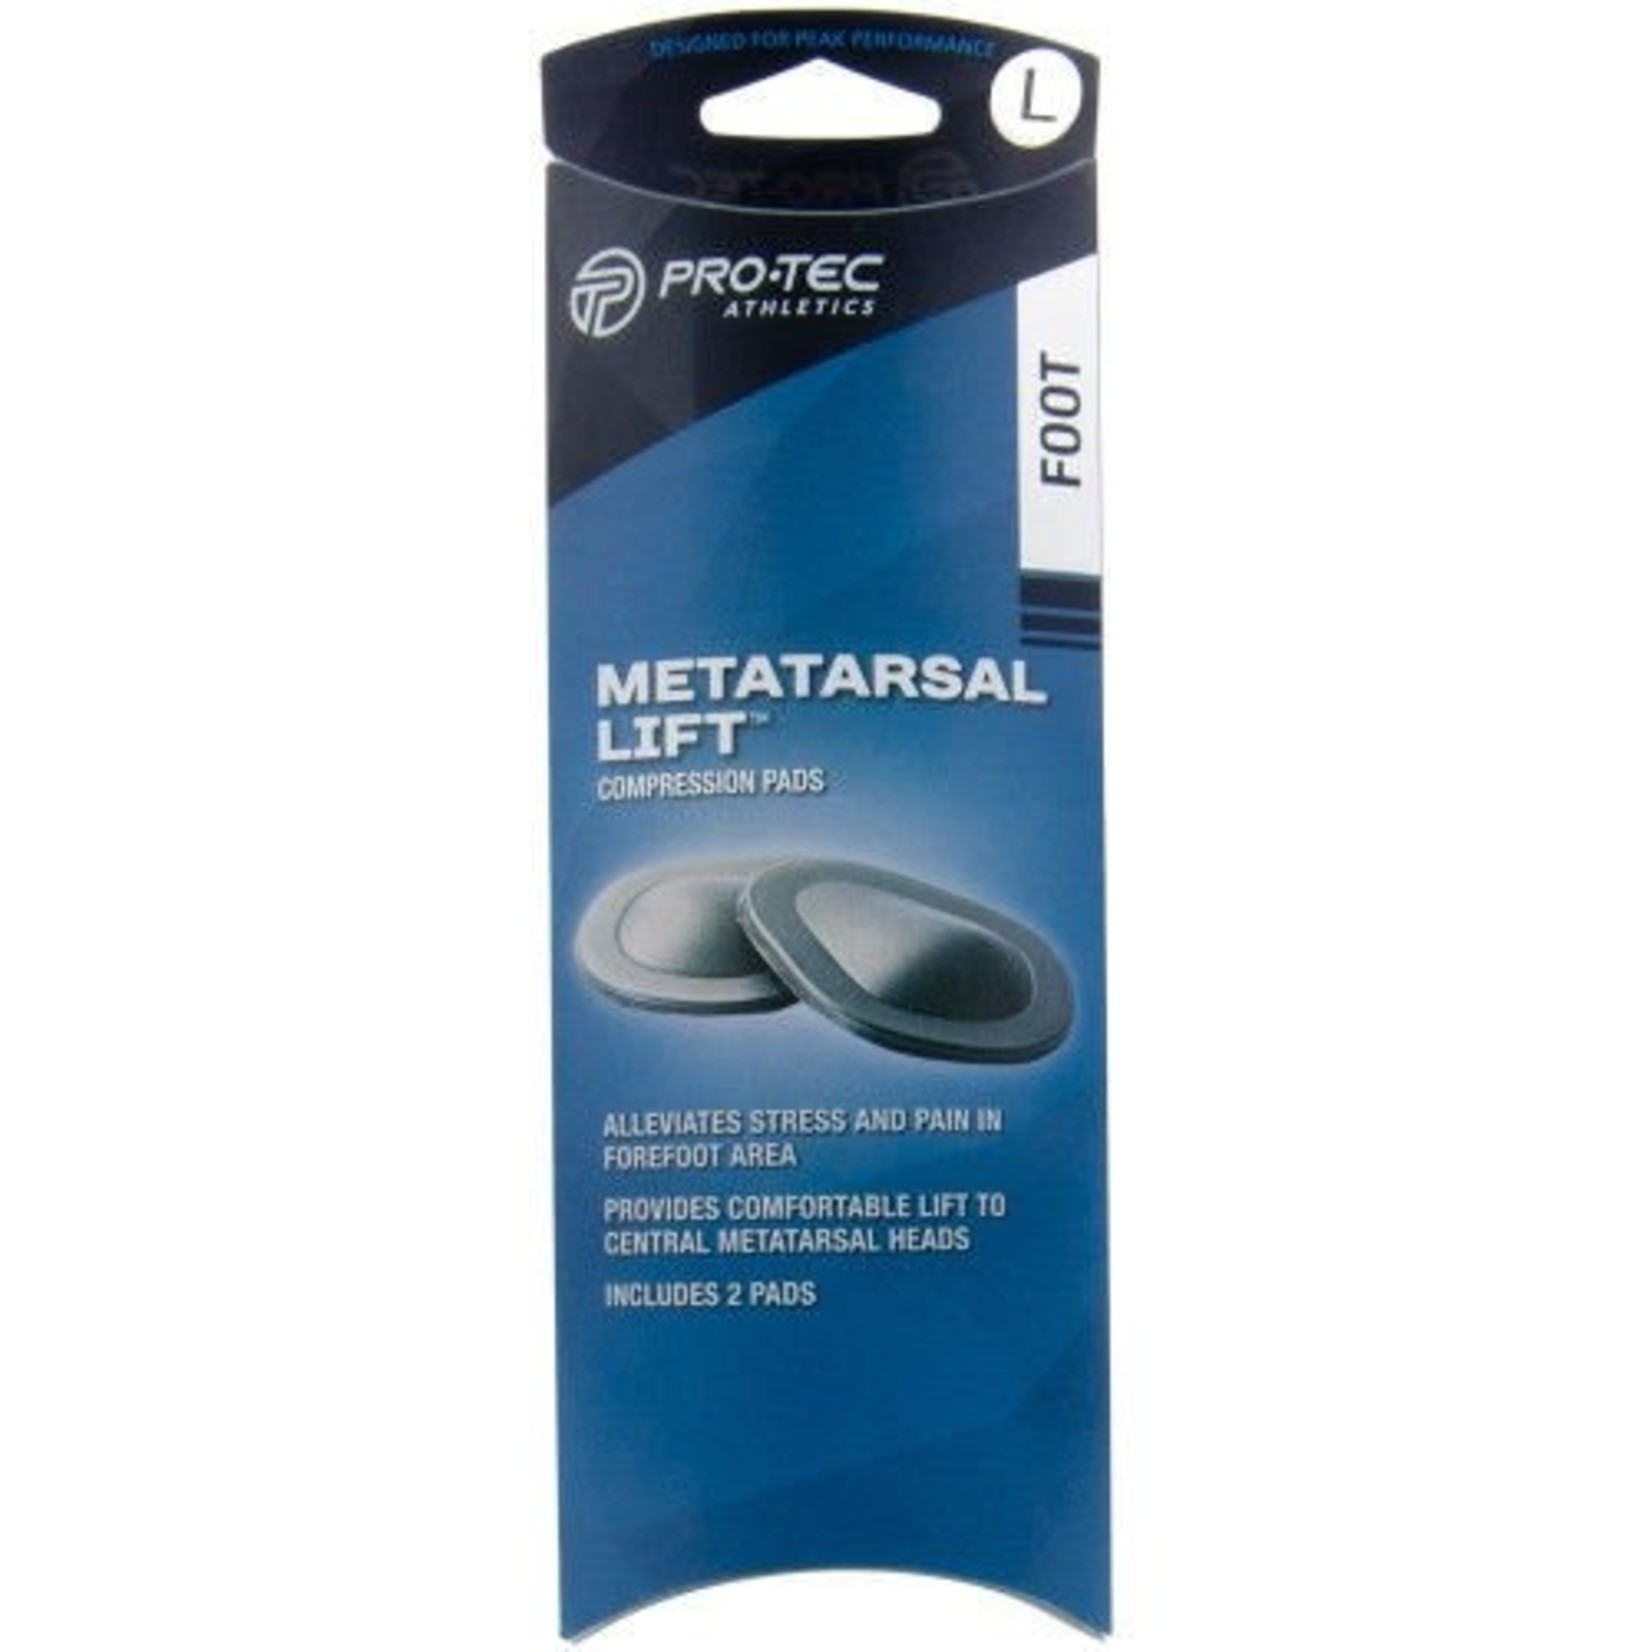 Pro-Tec Metatarsal Lift